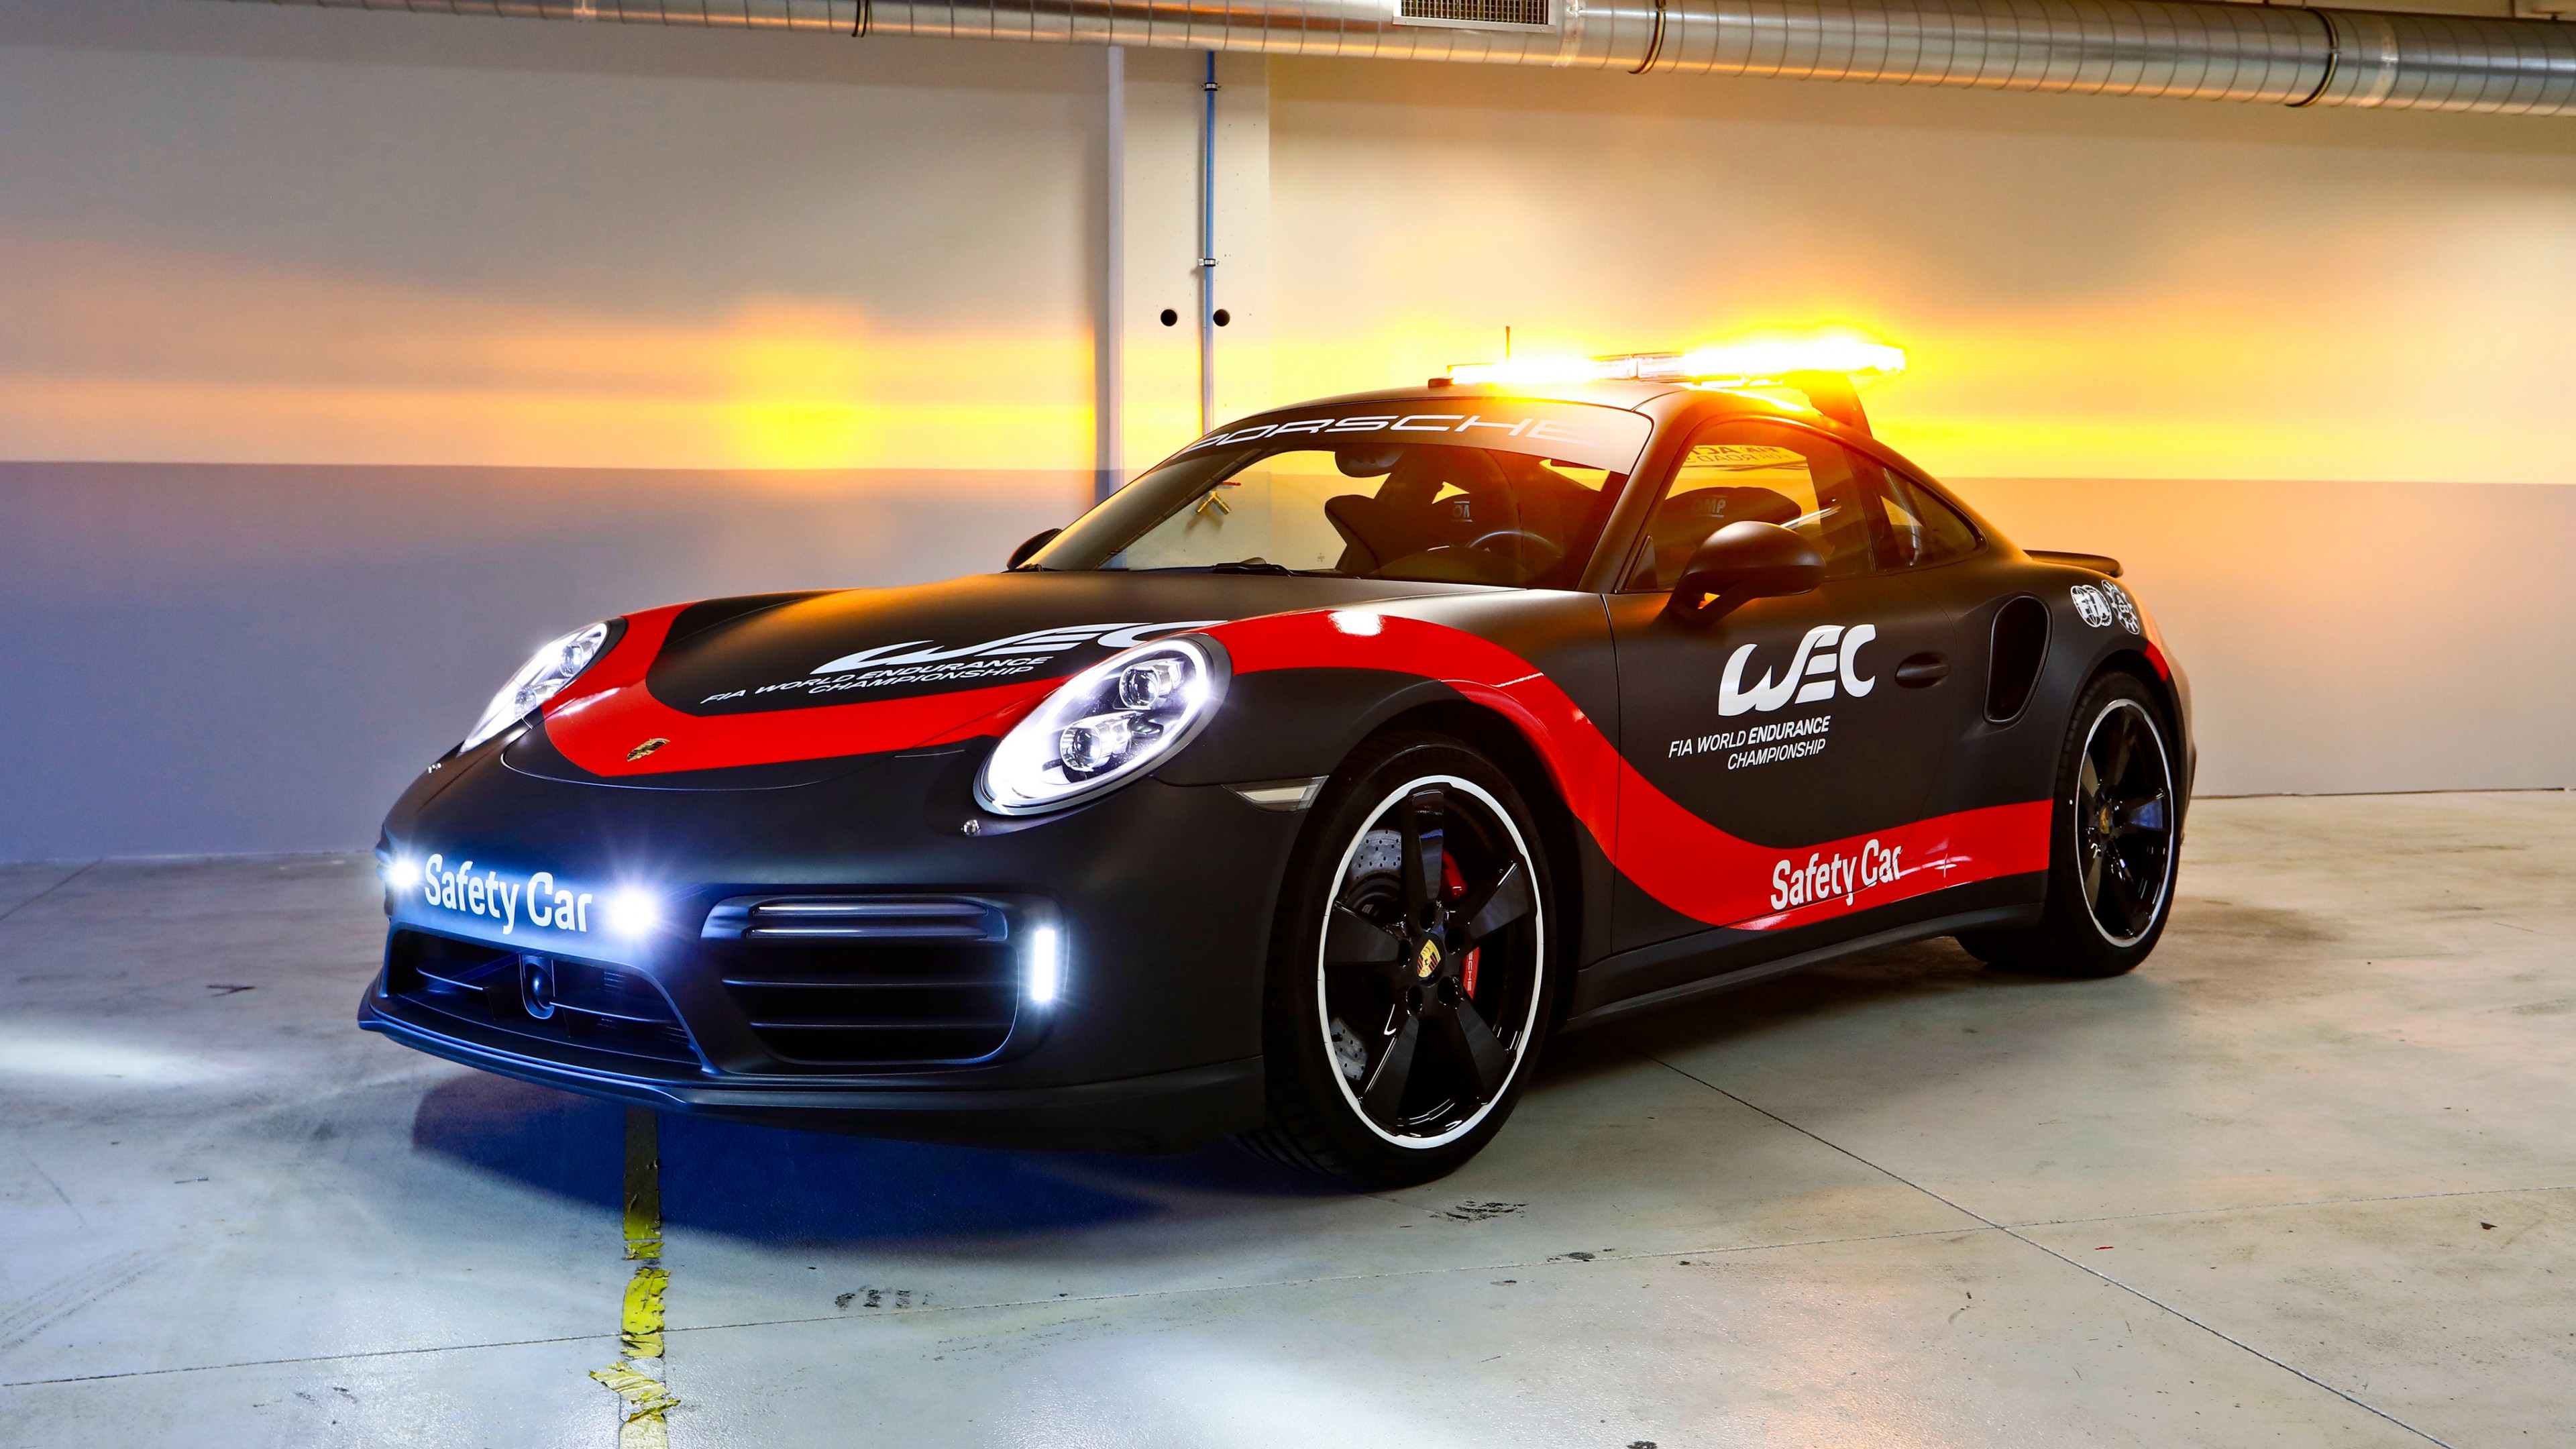 2018 Porsche 911 Turbo WEC Safety Car 4K